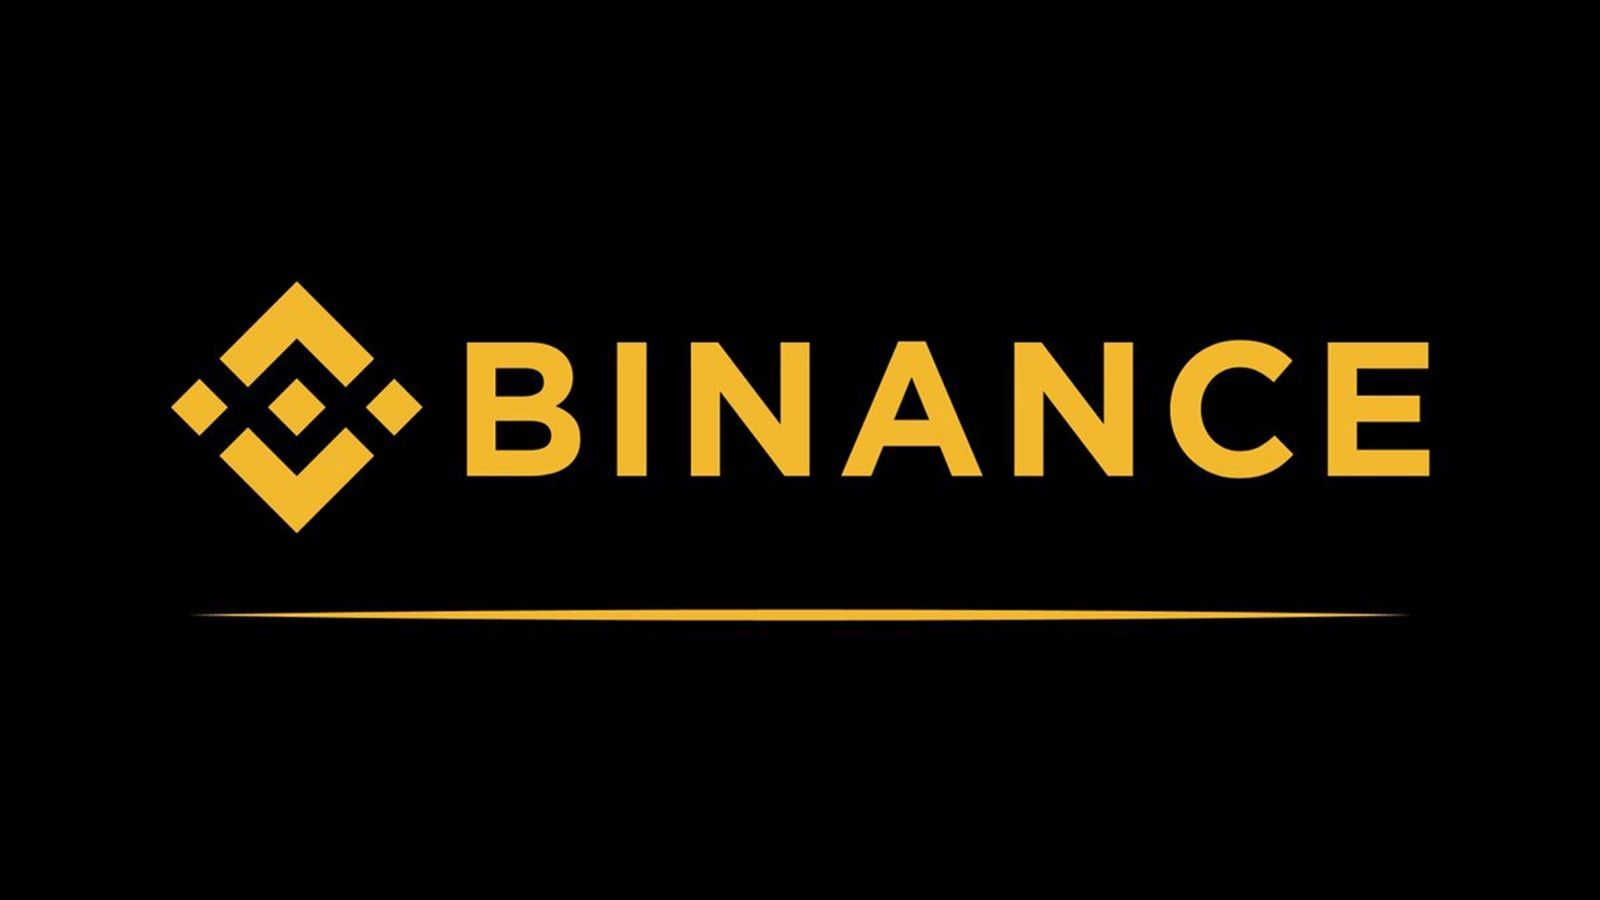 <a href="https://www.binance.com/vi">Binance - Sàn giao dịch tiền mã hoá dành cho Bitcoin, Ethereum &amp; Các altcoin</a>